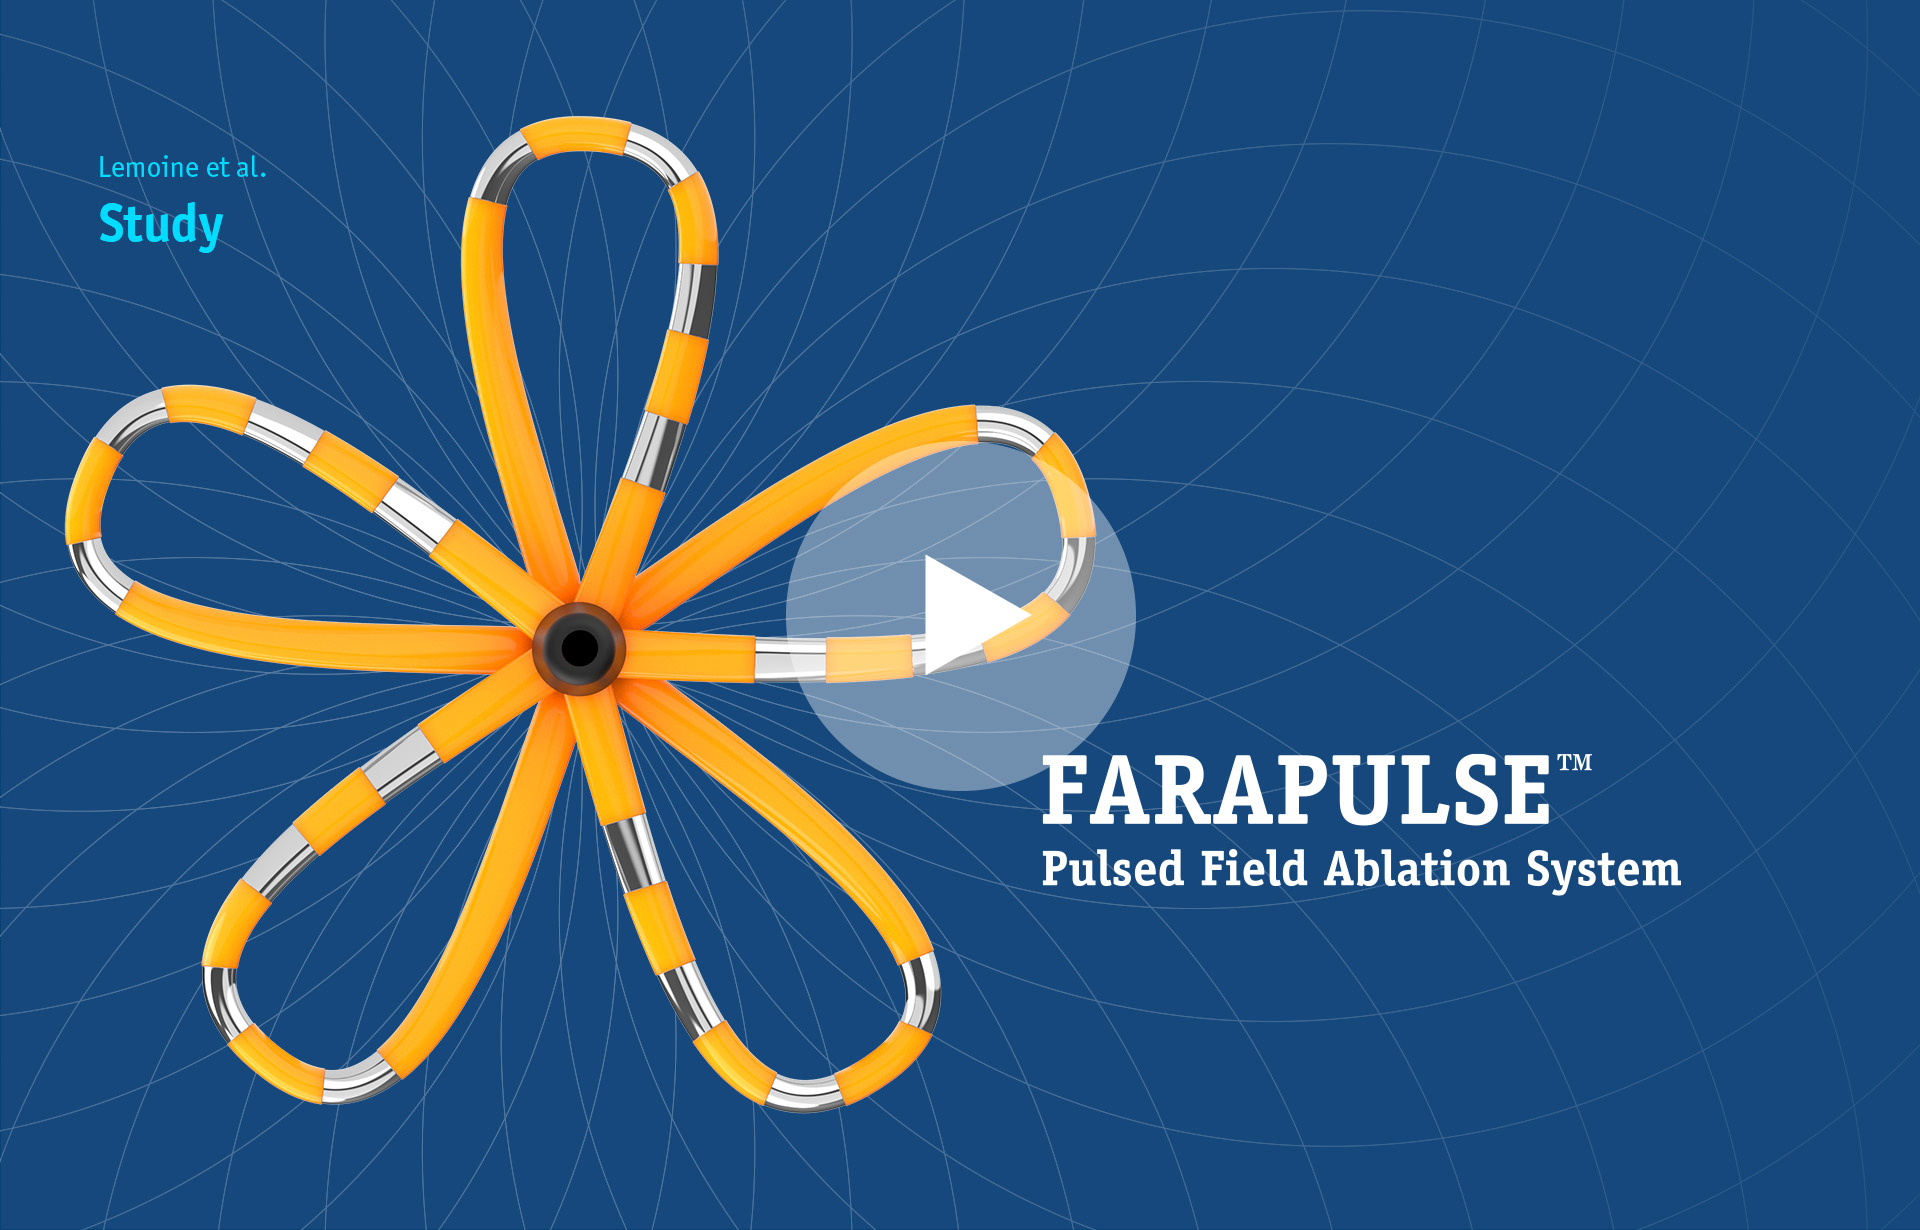 A 138-patient study on FARAPULSE PFA by Lemoine et al.